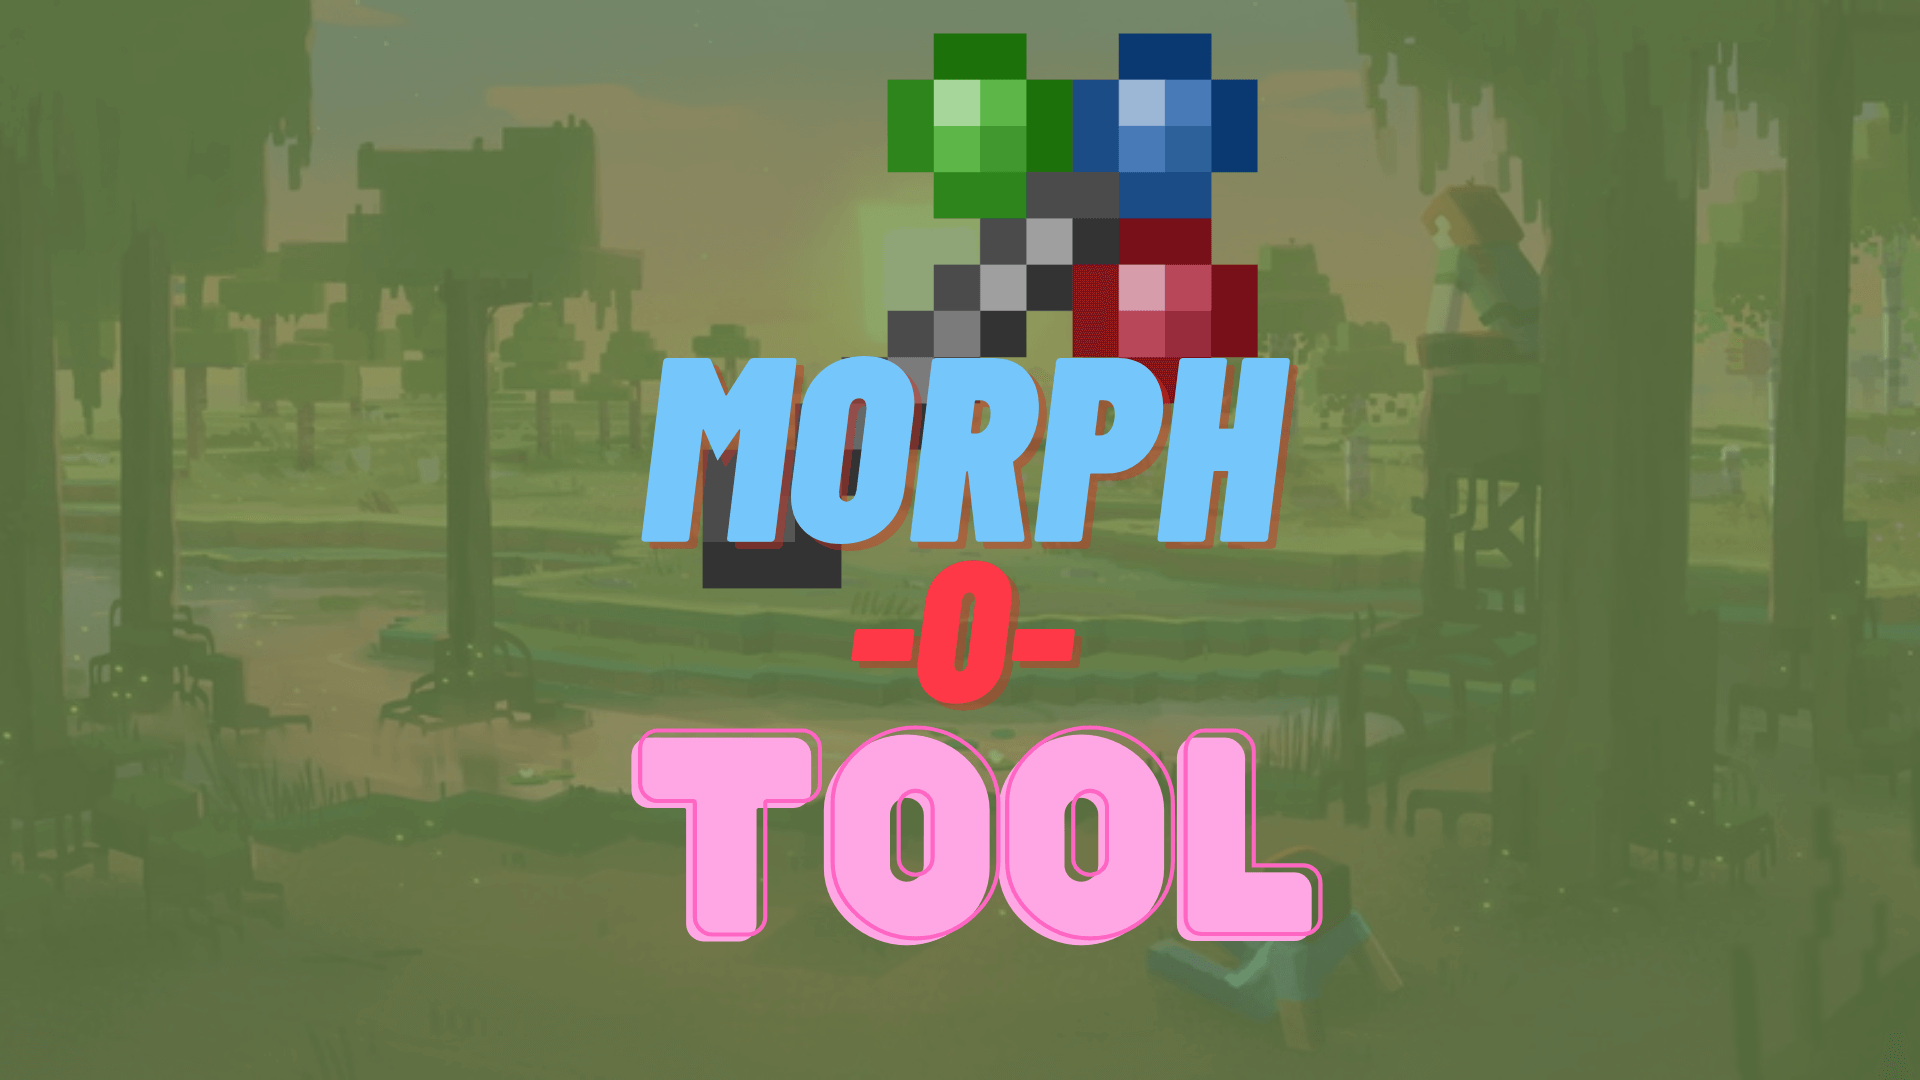 Morph-o-Tool Mod